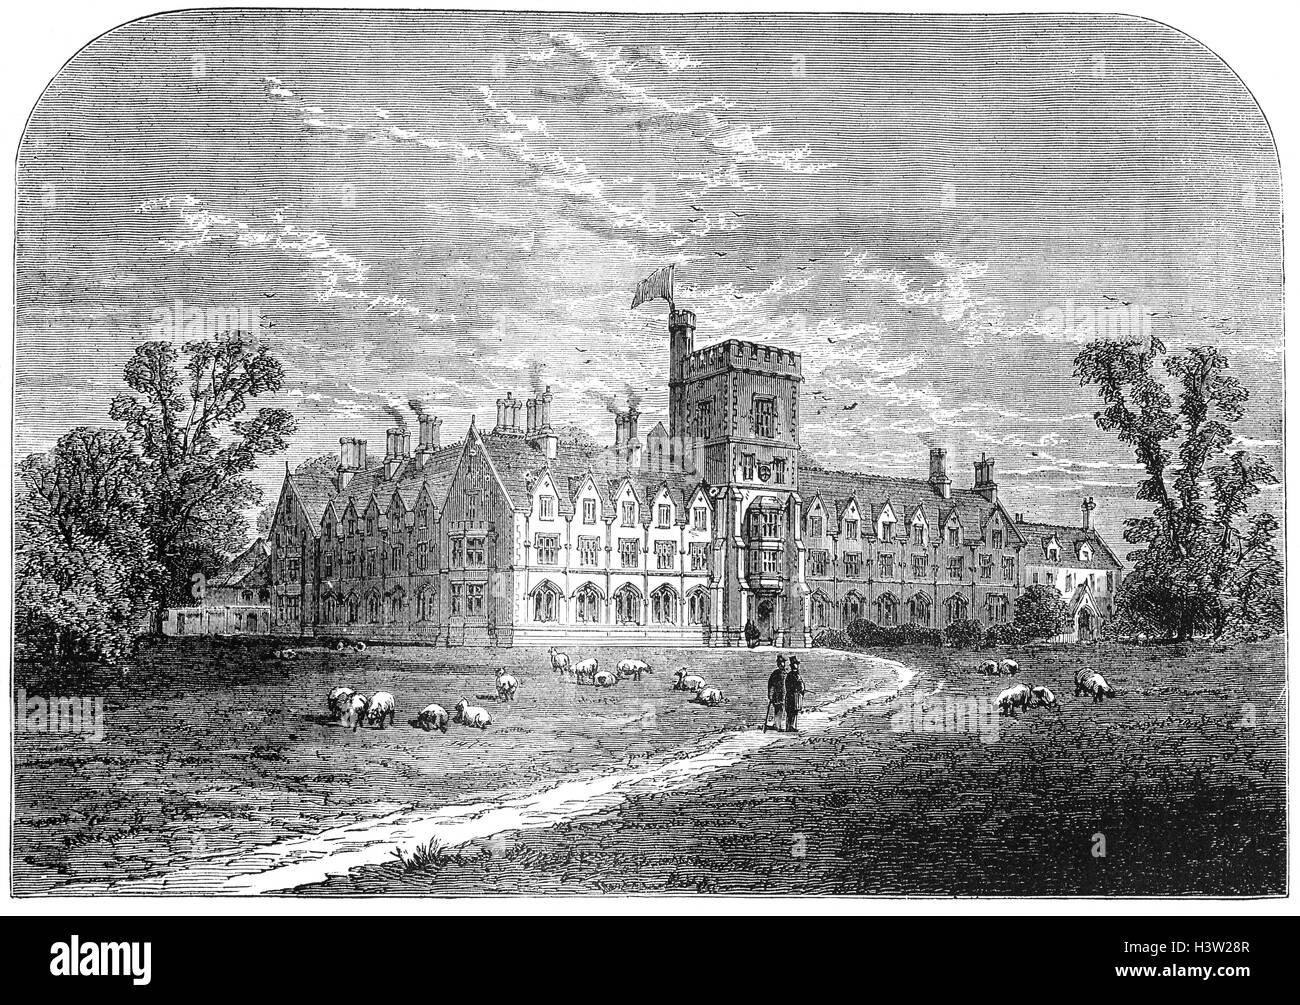 Der Royal Agricultural University oder RAU (vorher bekannt als der Royal Agricultural College oder RAC) befindet sich in Cirencester, Gloucestershire, UK. Im Jahre 1845 gegründet, war es die erste Landwirtschaftsschule in der englischsprachigen Welt. Stockfoto